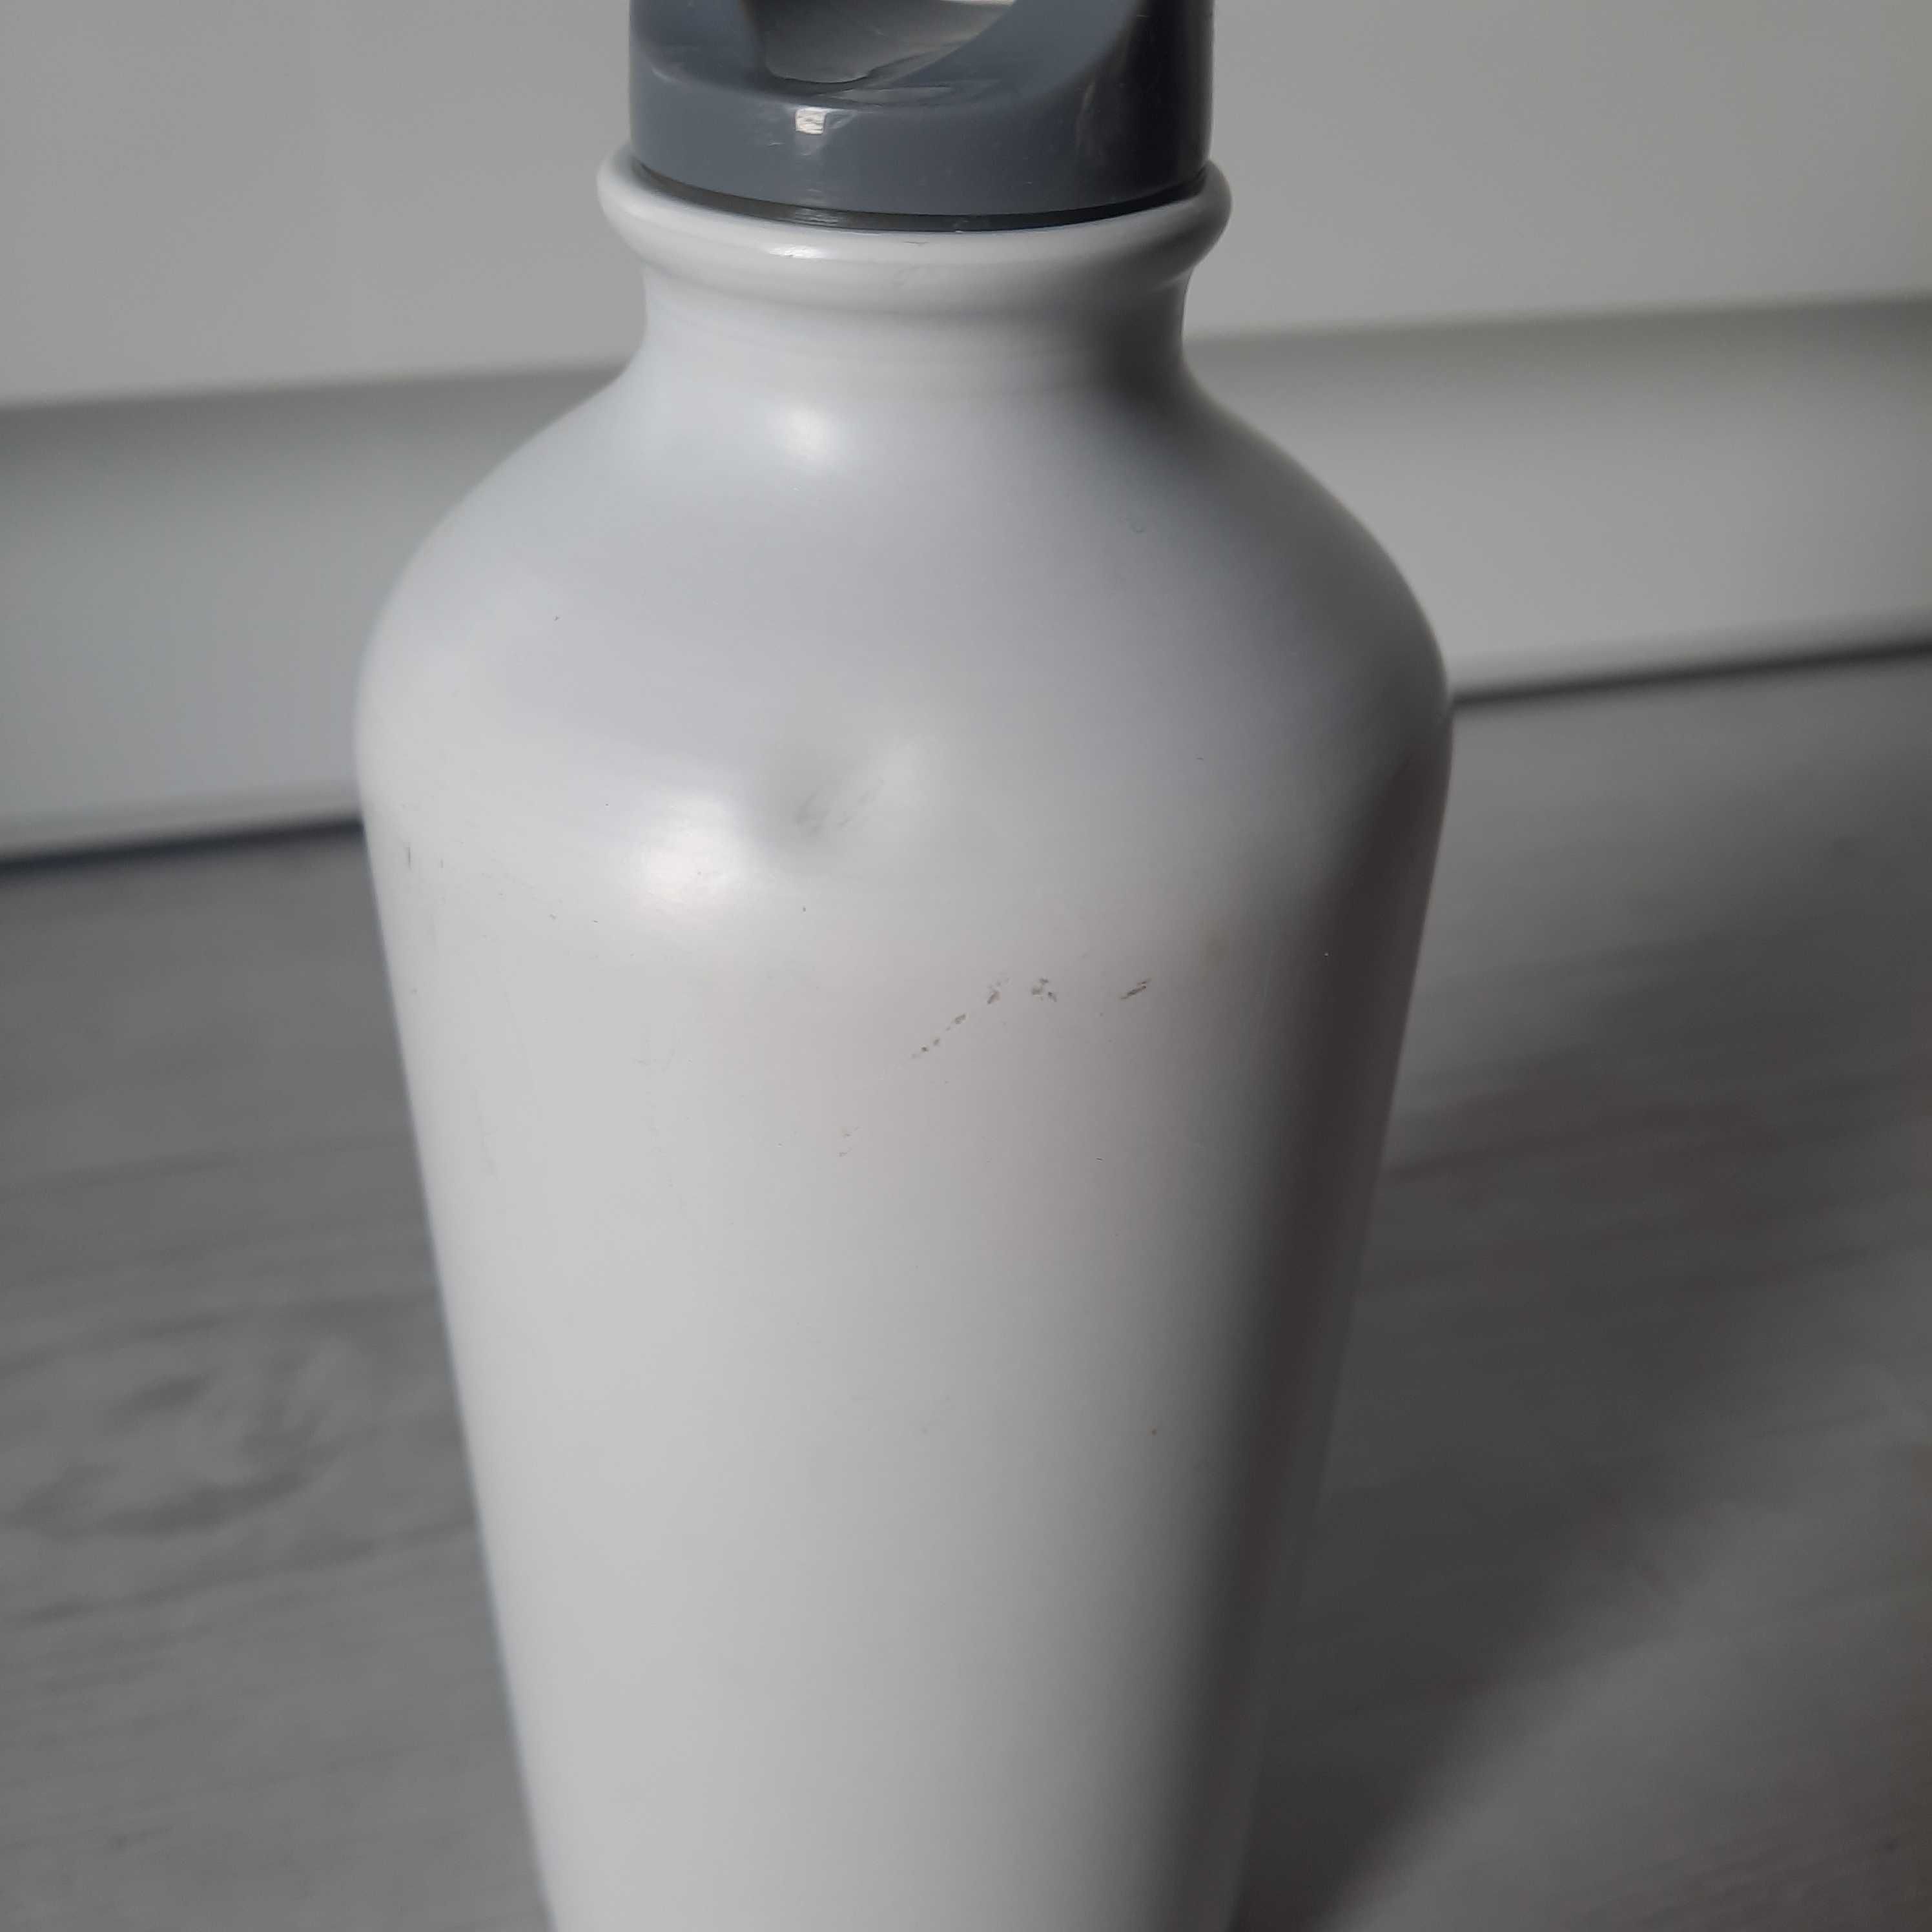 Bidon aluminiowy butelka Hugo Boss